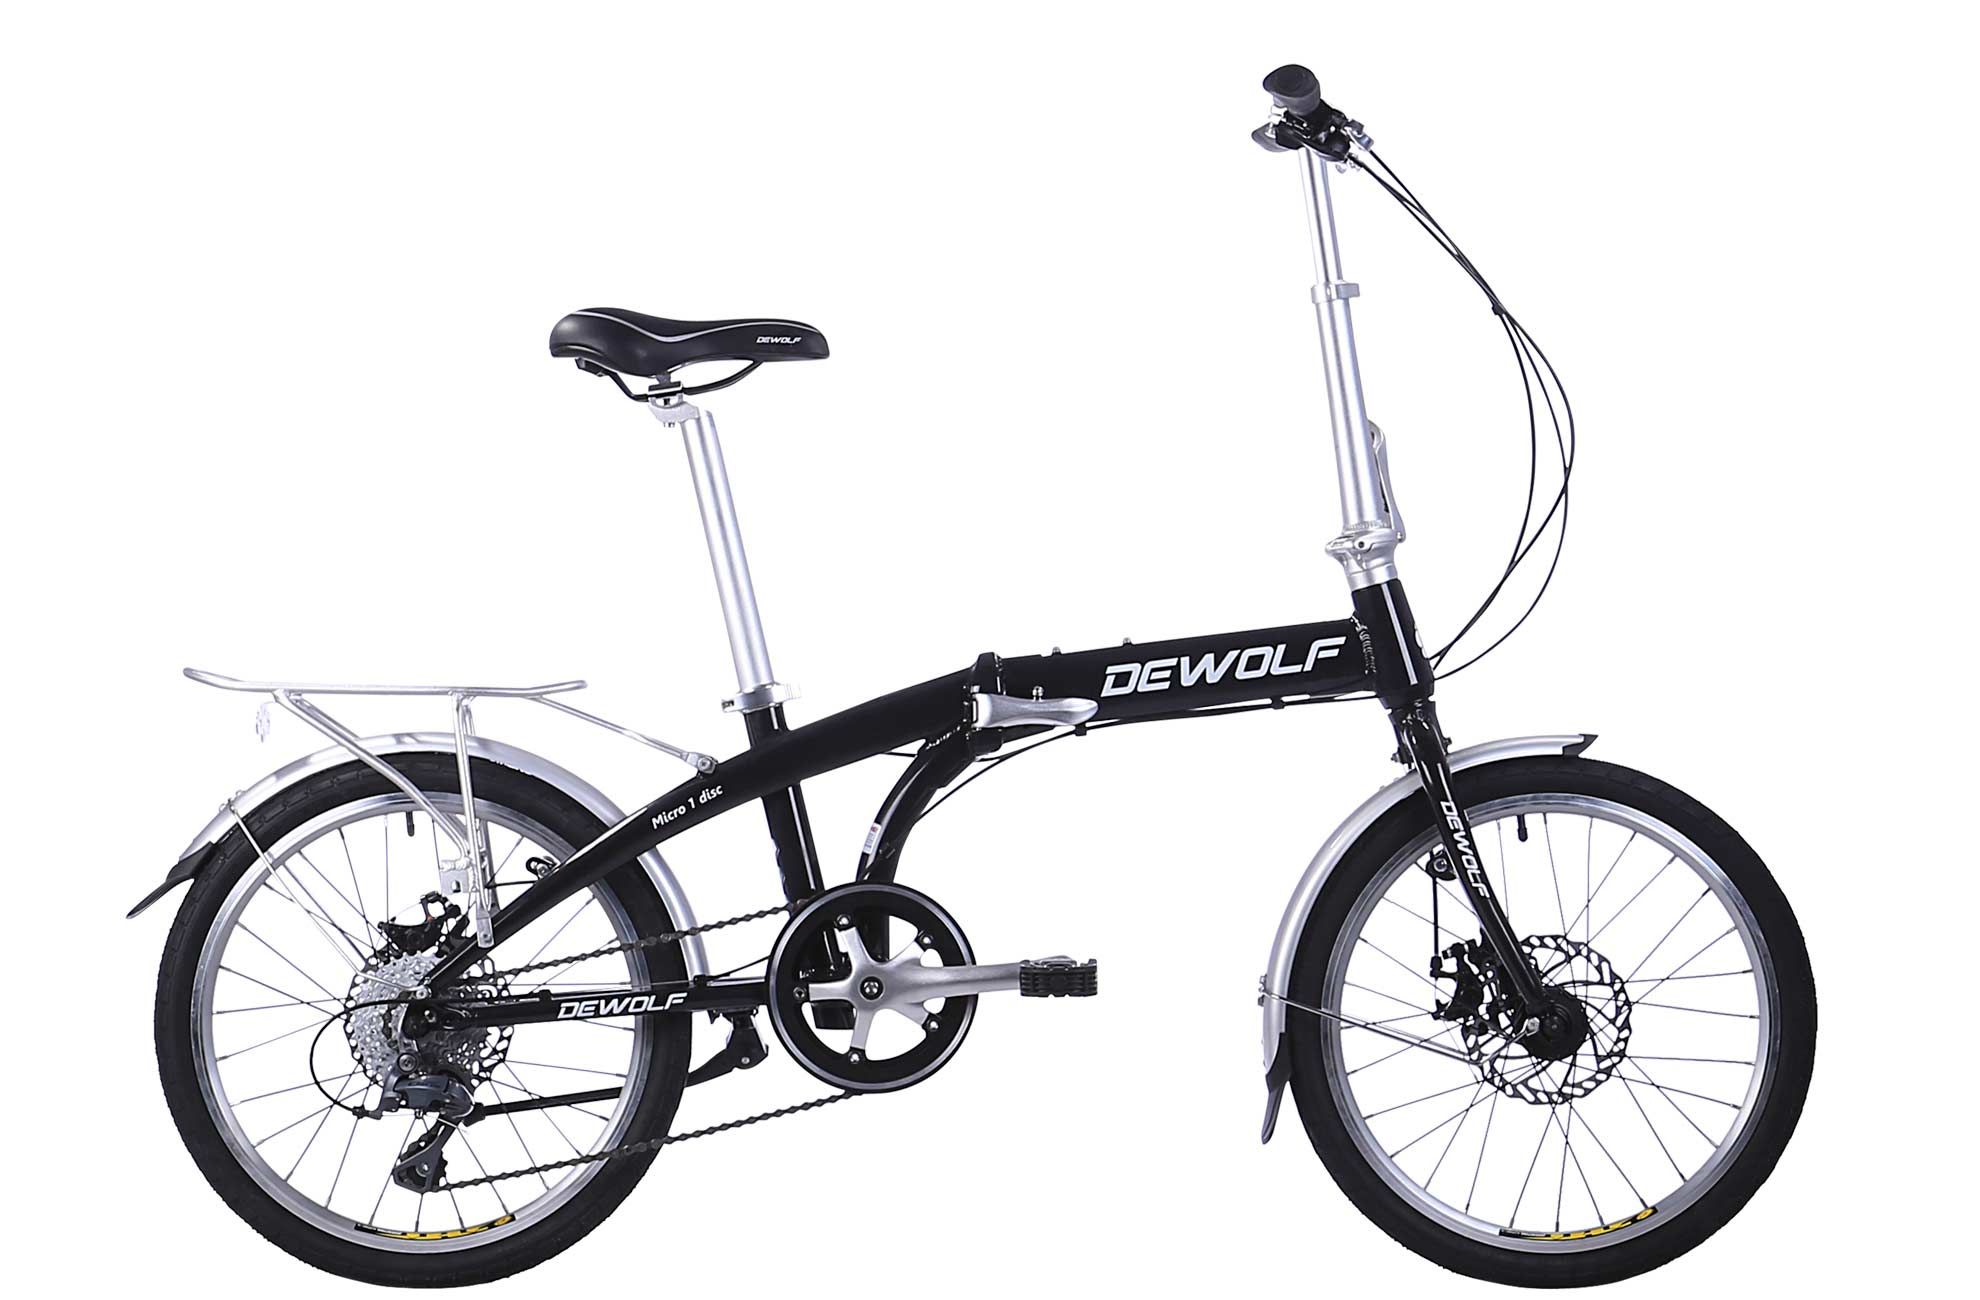  Отзывы о Складном велосипеде Dewolf Micro 1 2016